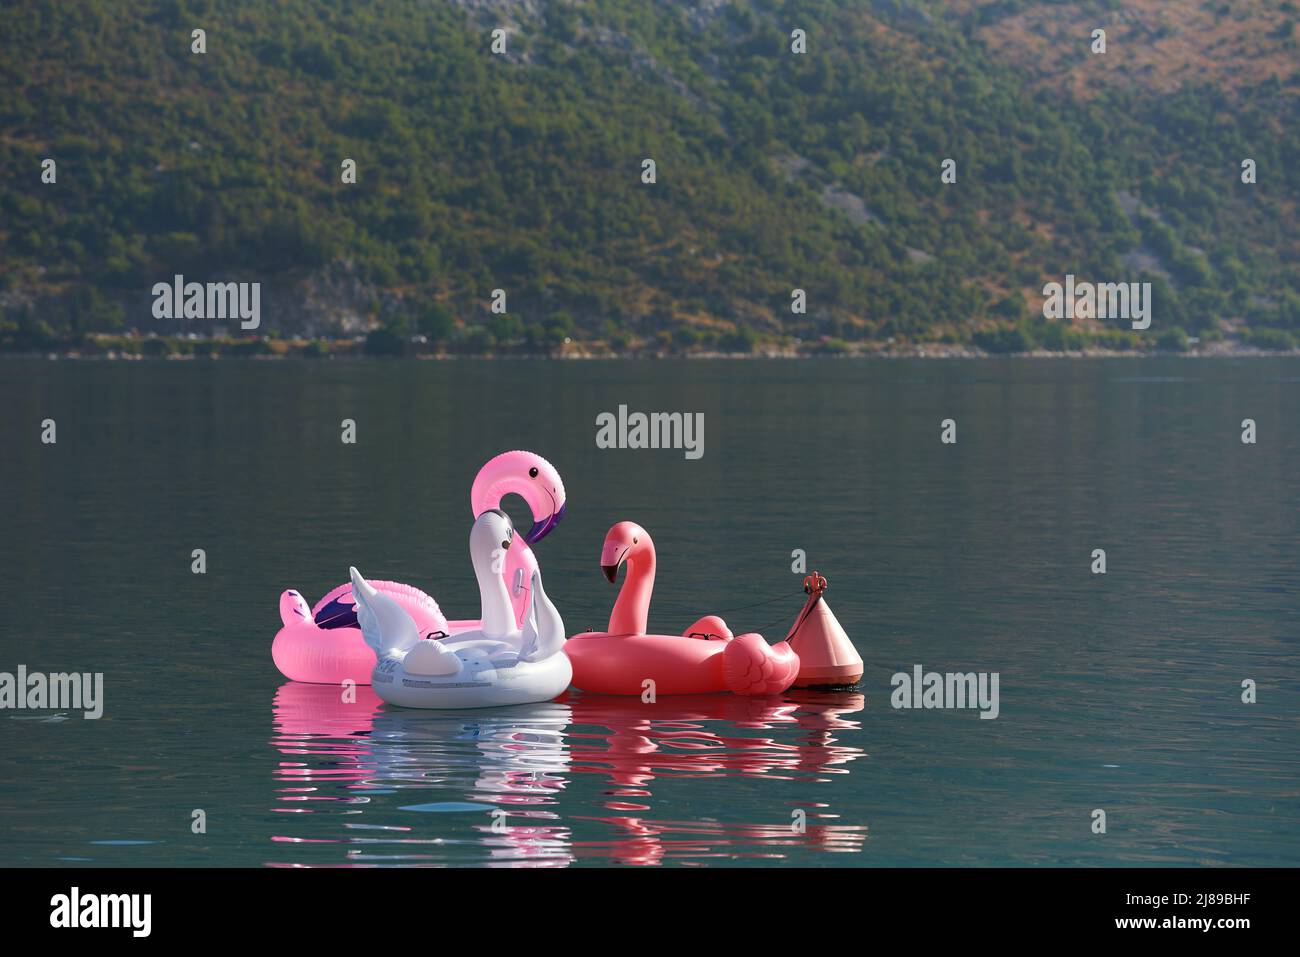 Flamants gonflables dans la mer pour la natation en toute sécurité Banque D'Images